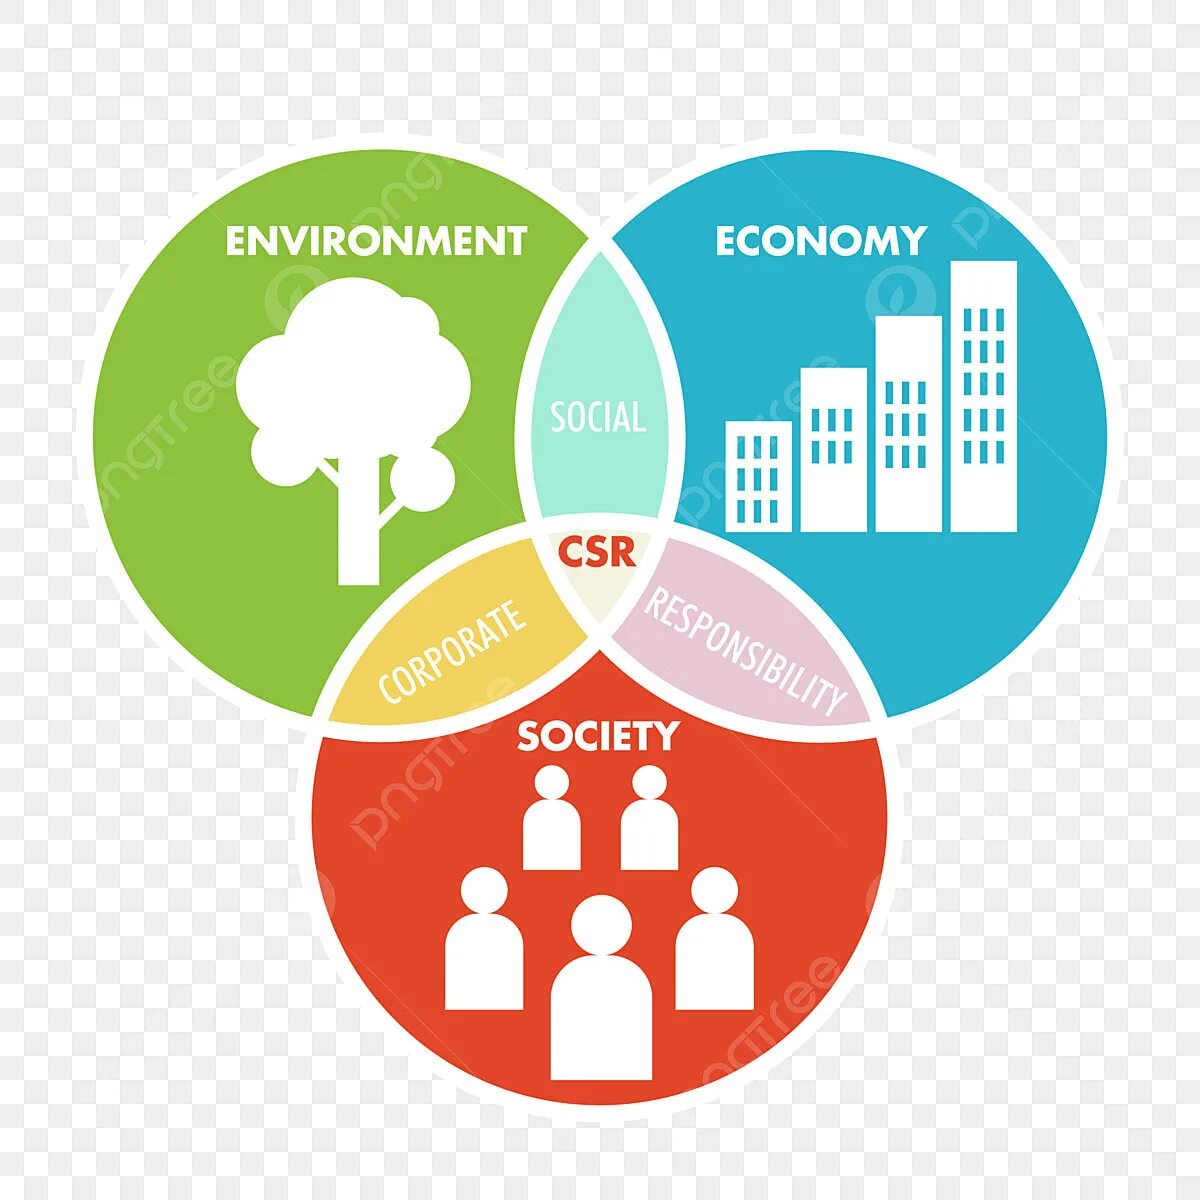 Economy society. Инфографика корпоративная социальная ответственность. Иконки для инфографики PNG. Socially and environmentally responsible иконка. Economy Society environment icons.